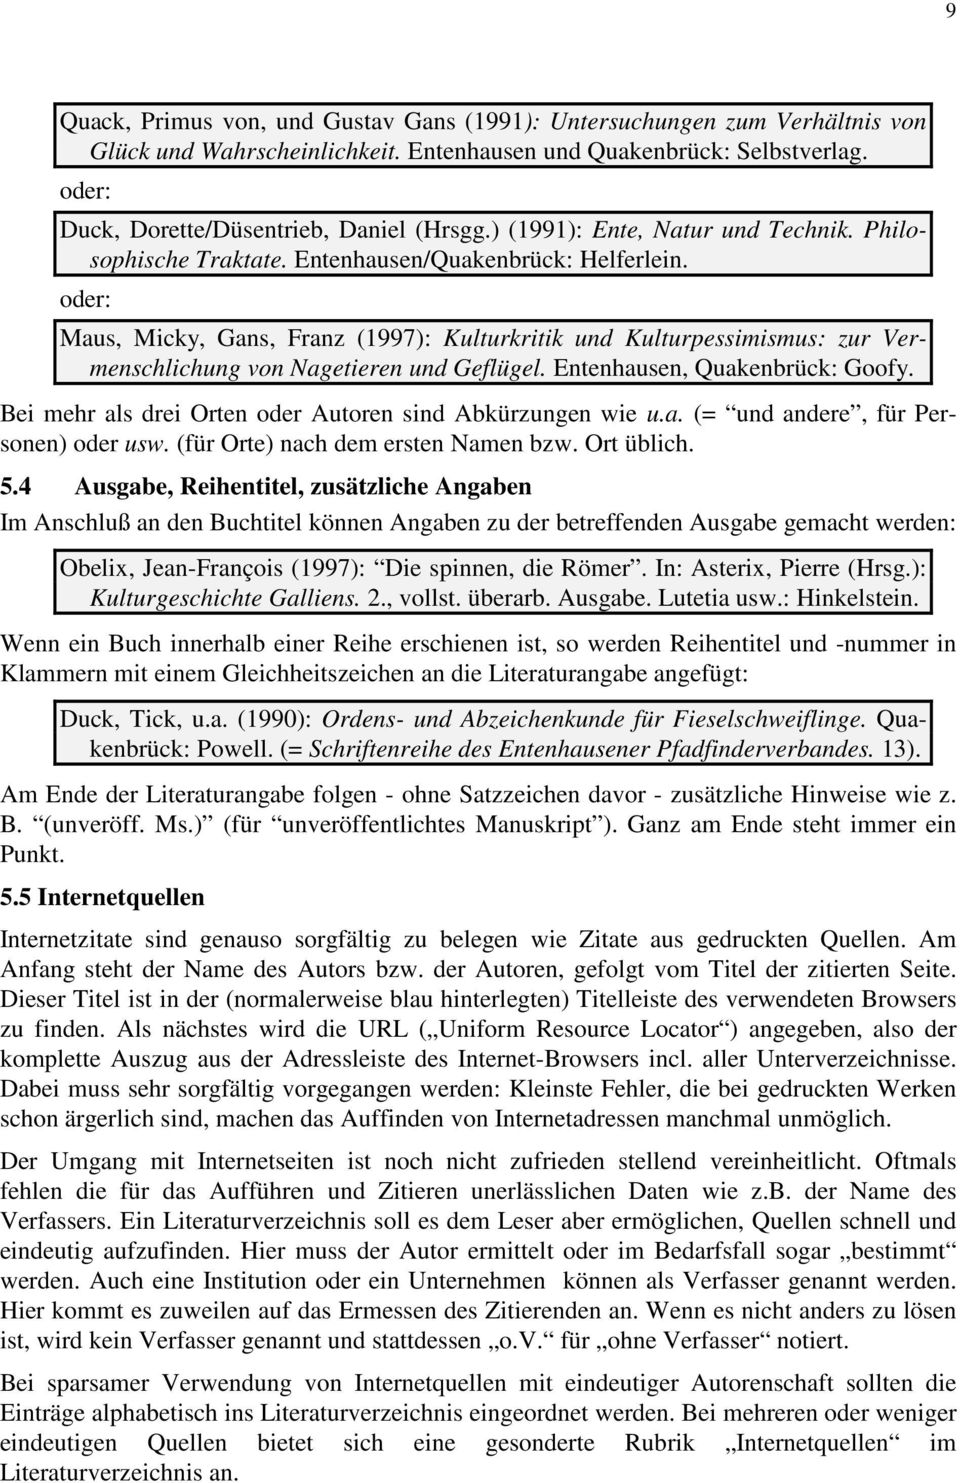 Maus, Micky, Gans, Franz (1997): Kulturkritik und Kulturpessimismus: zur Vermenschlichung von Nagetieren und Geflügel. Entenhausen, Quakenbrück: Goofy.